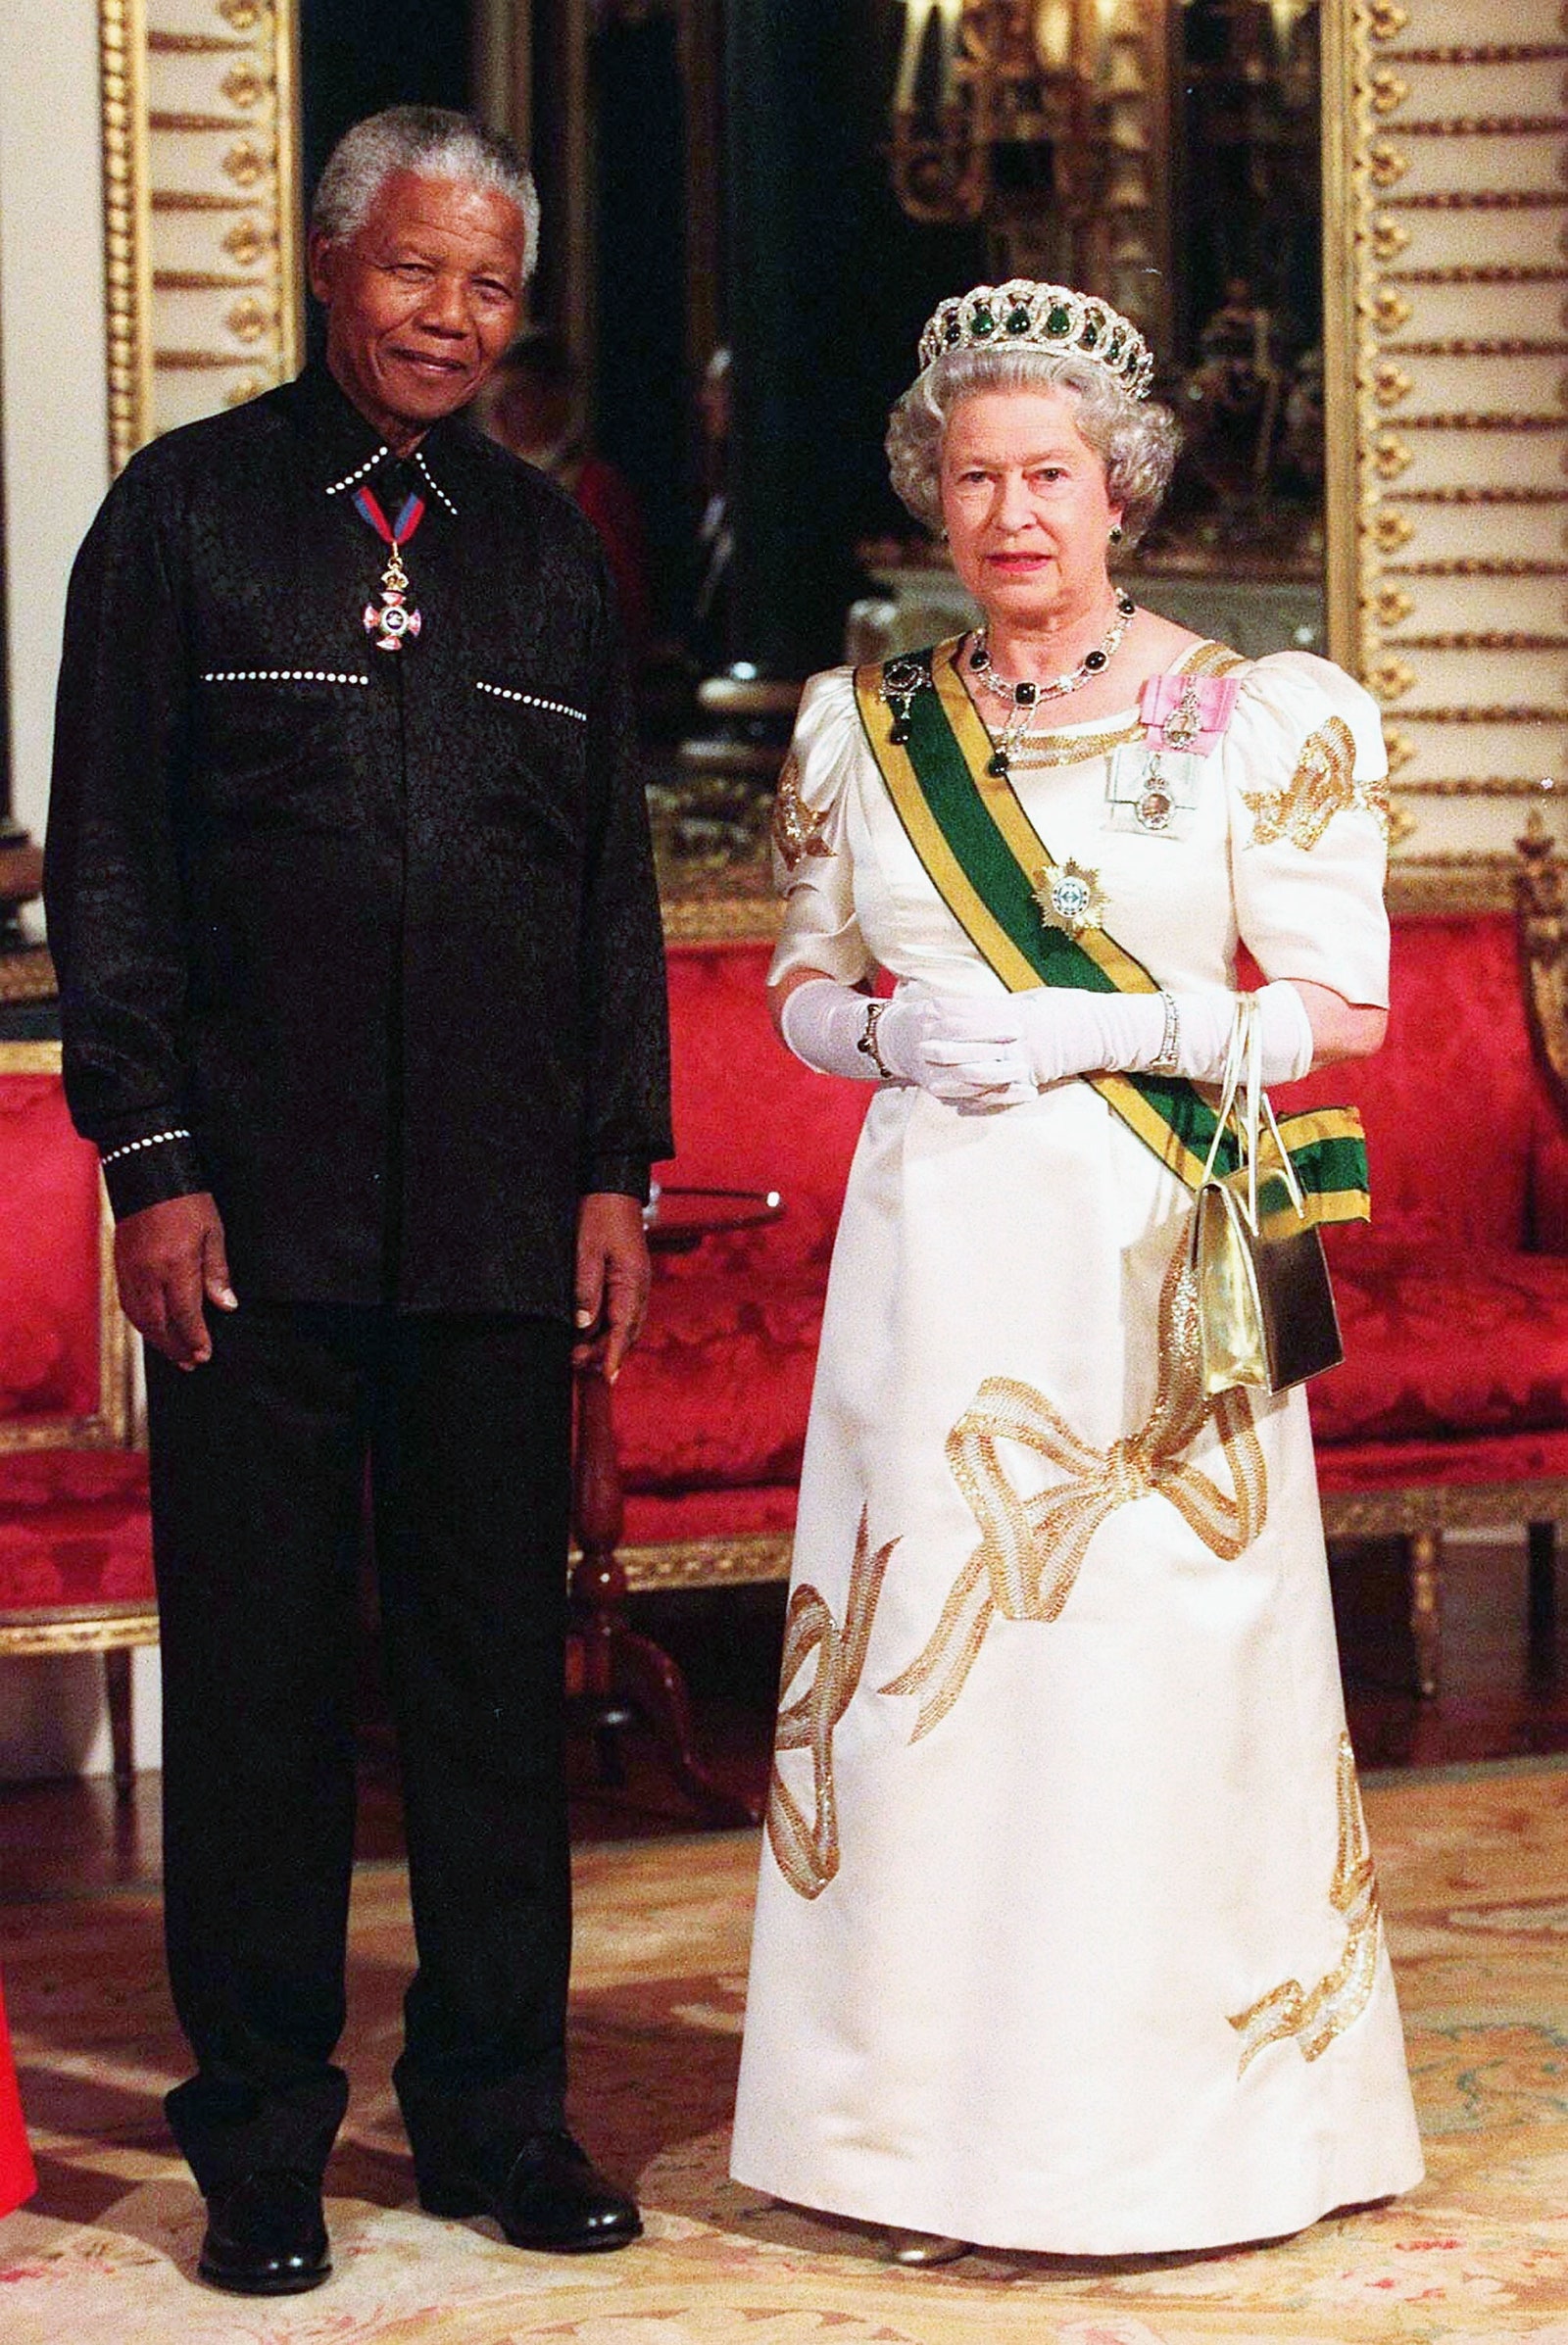 Năm 2000, Nữ hoàng mặc một chiếc váy in hình nơ để chào đón Nelson Mandela tại Cung điện Buckingham, kết hợp với đồ trang sức bằng ngọc lục bảo, bao gồm cả vương miện của Đại công tước Vladimir. 